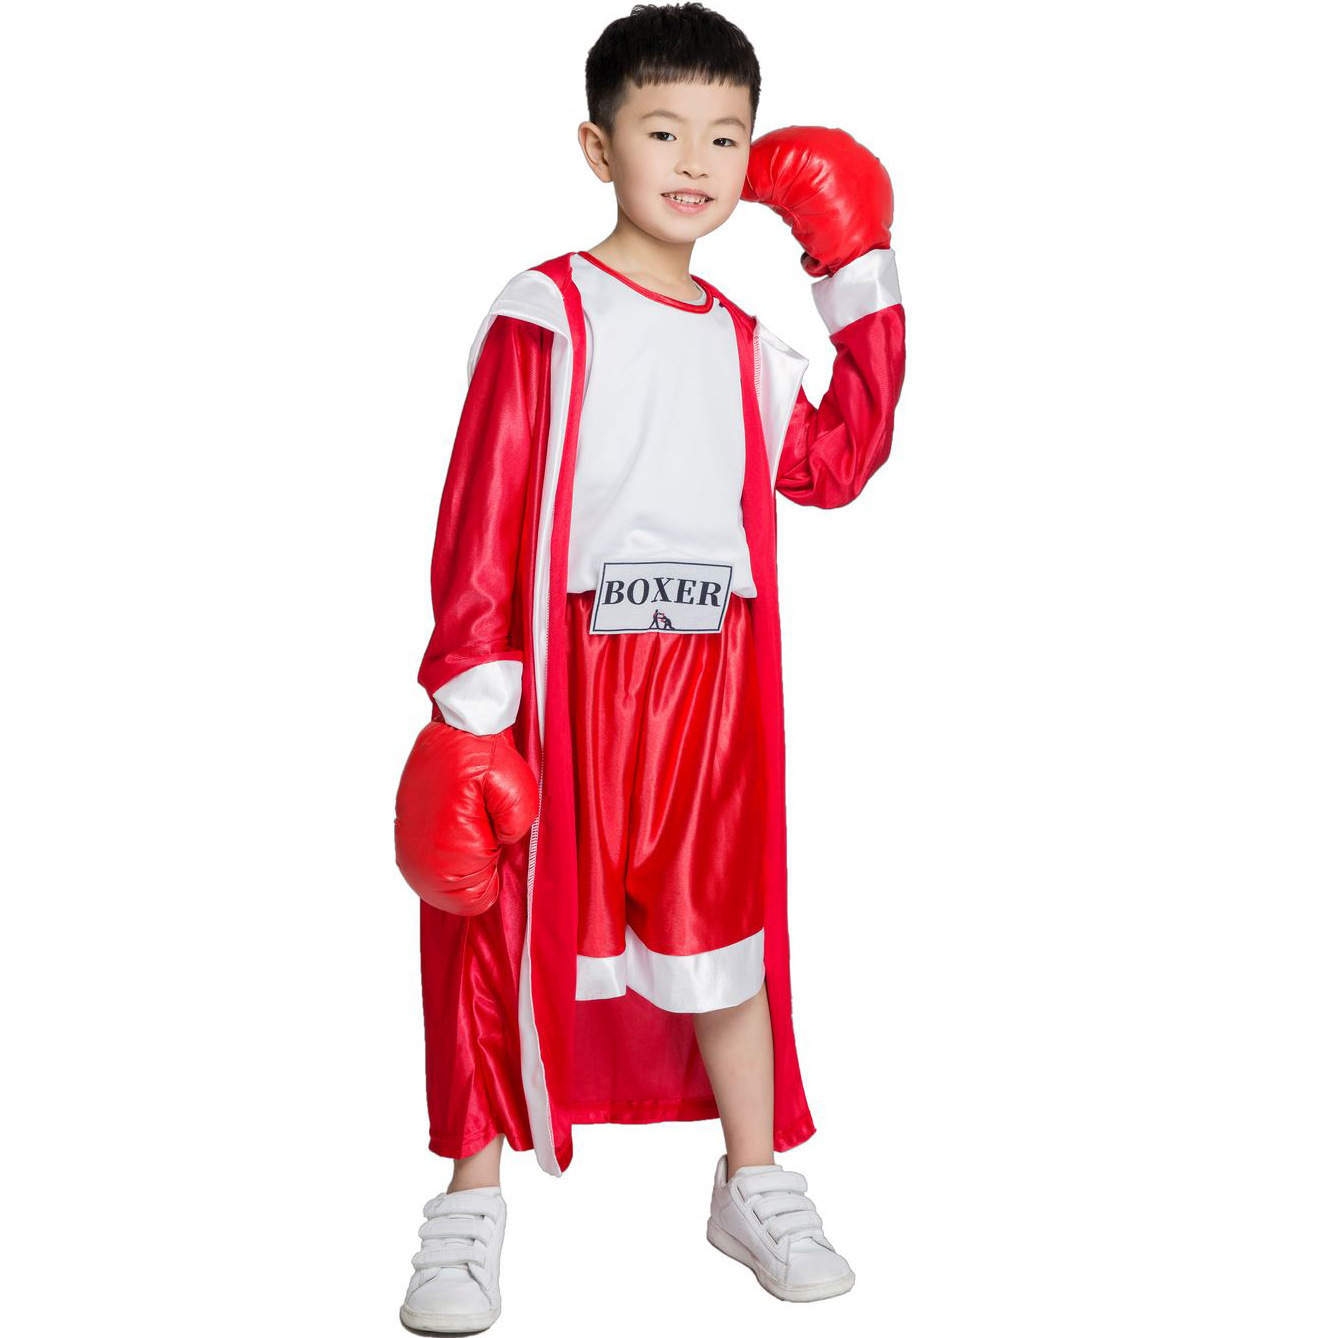 Coppia Boxe Rossa Boxer Costume Cosplay Per Donne Adulte Uomini Fantasia  Purim Costumi di Halloween Party Costume Carnevale Fantasia